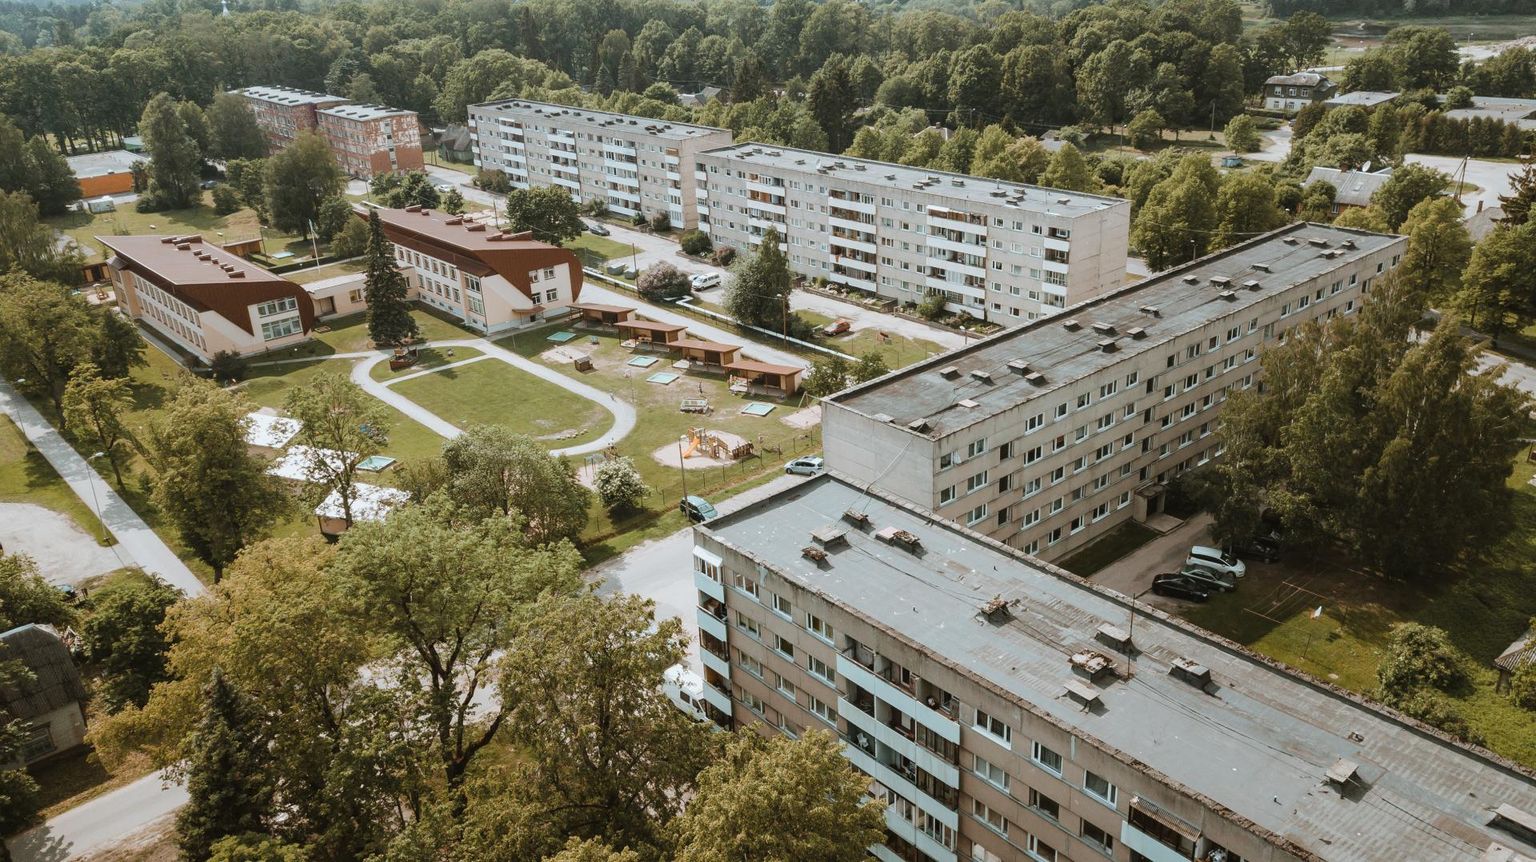 Sindis Tööstuse 2, Kooli 2b ja Pärnu maantee 39 ja 37 nõukogudeaegsed korterelamud on taotlenud KredExilt rekonstrueerimistoetust ja praeguse seisuga on nende taotlused nii-öelda rohelises tsoonis ehk on suur tõenäosus toetust saada.